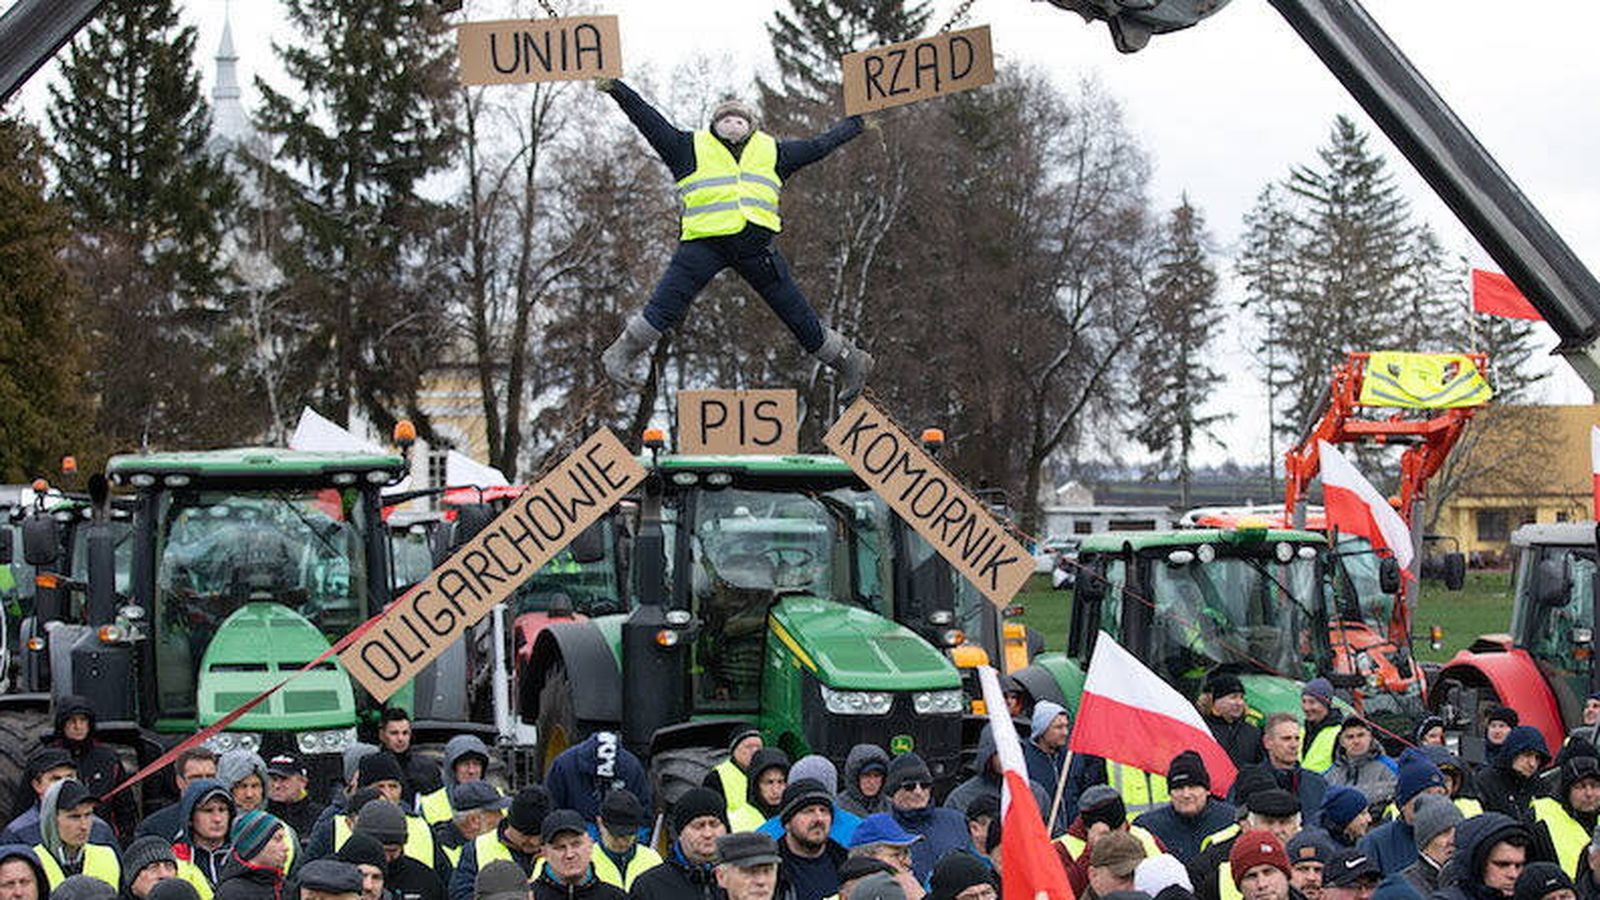 Campesinos polacos protestan en Czerniczyn, cerca de la frontera con Ucrania. En la pancarta se lee 'UE', 'Gobierno', abajo desde la izquierda: 'Oligarcas' y 'usurpador de la justicia'. (Wyborcza / Jakub Orzechowski)